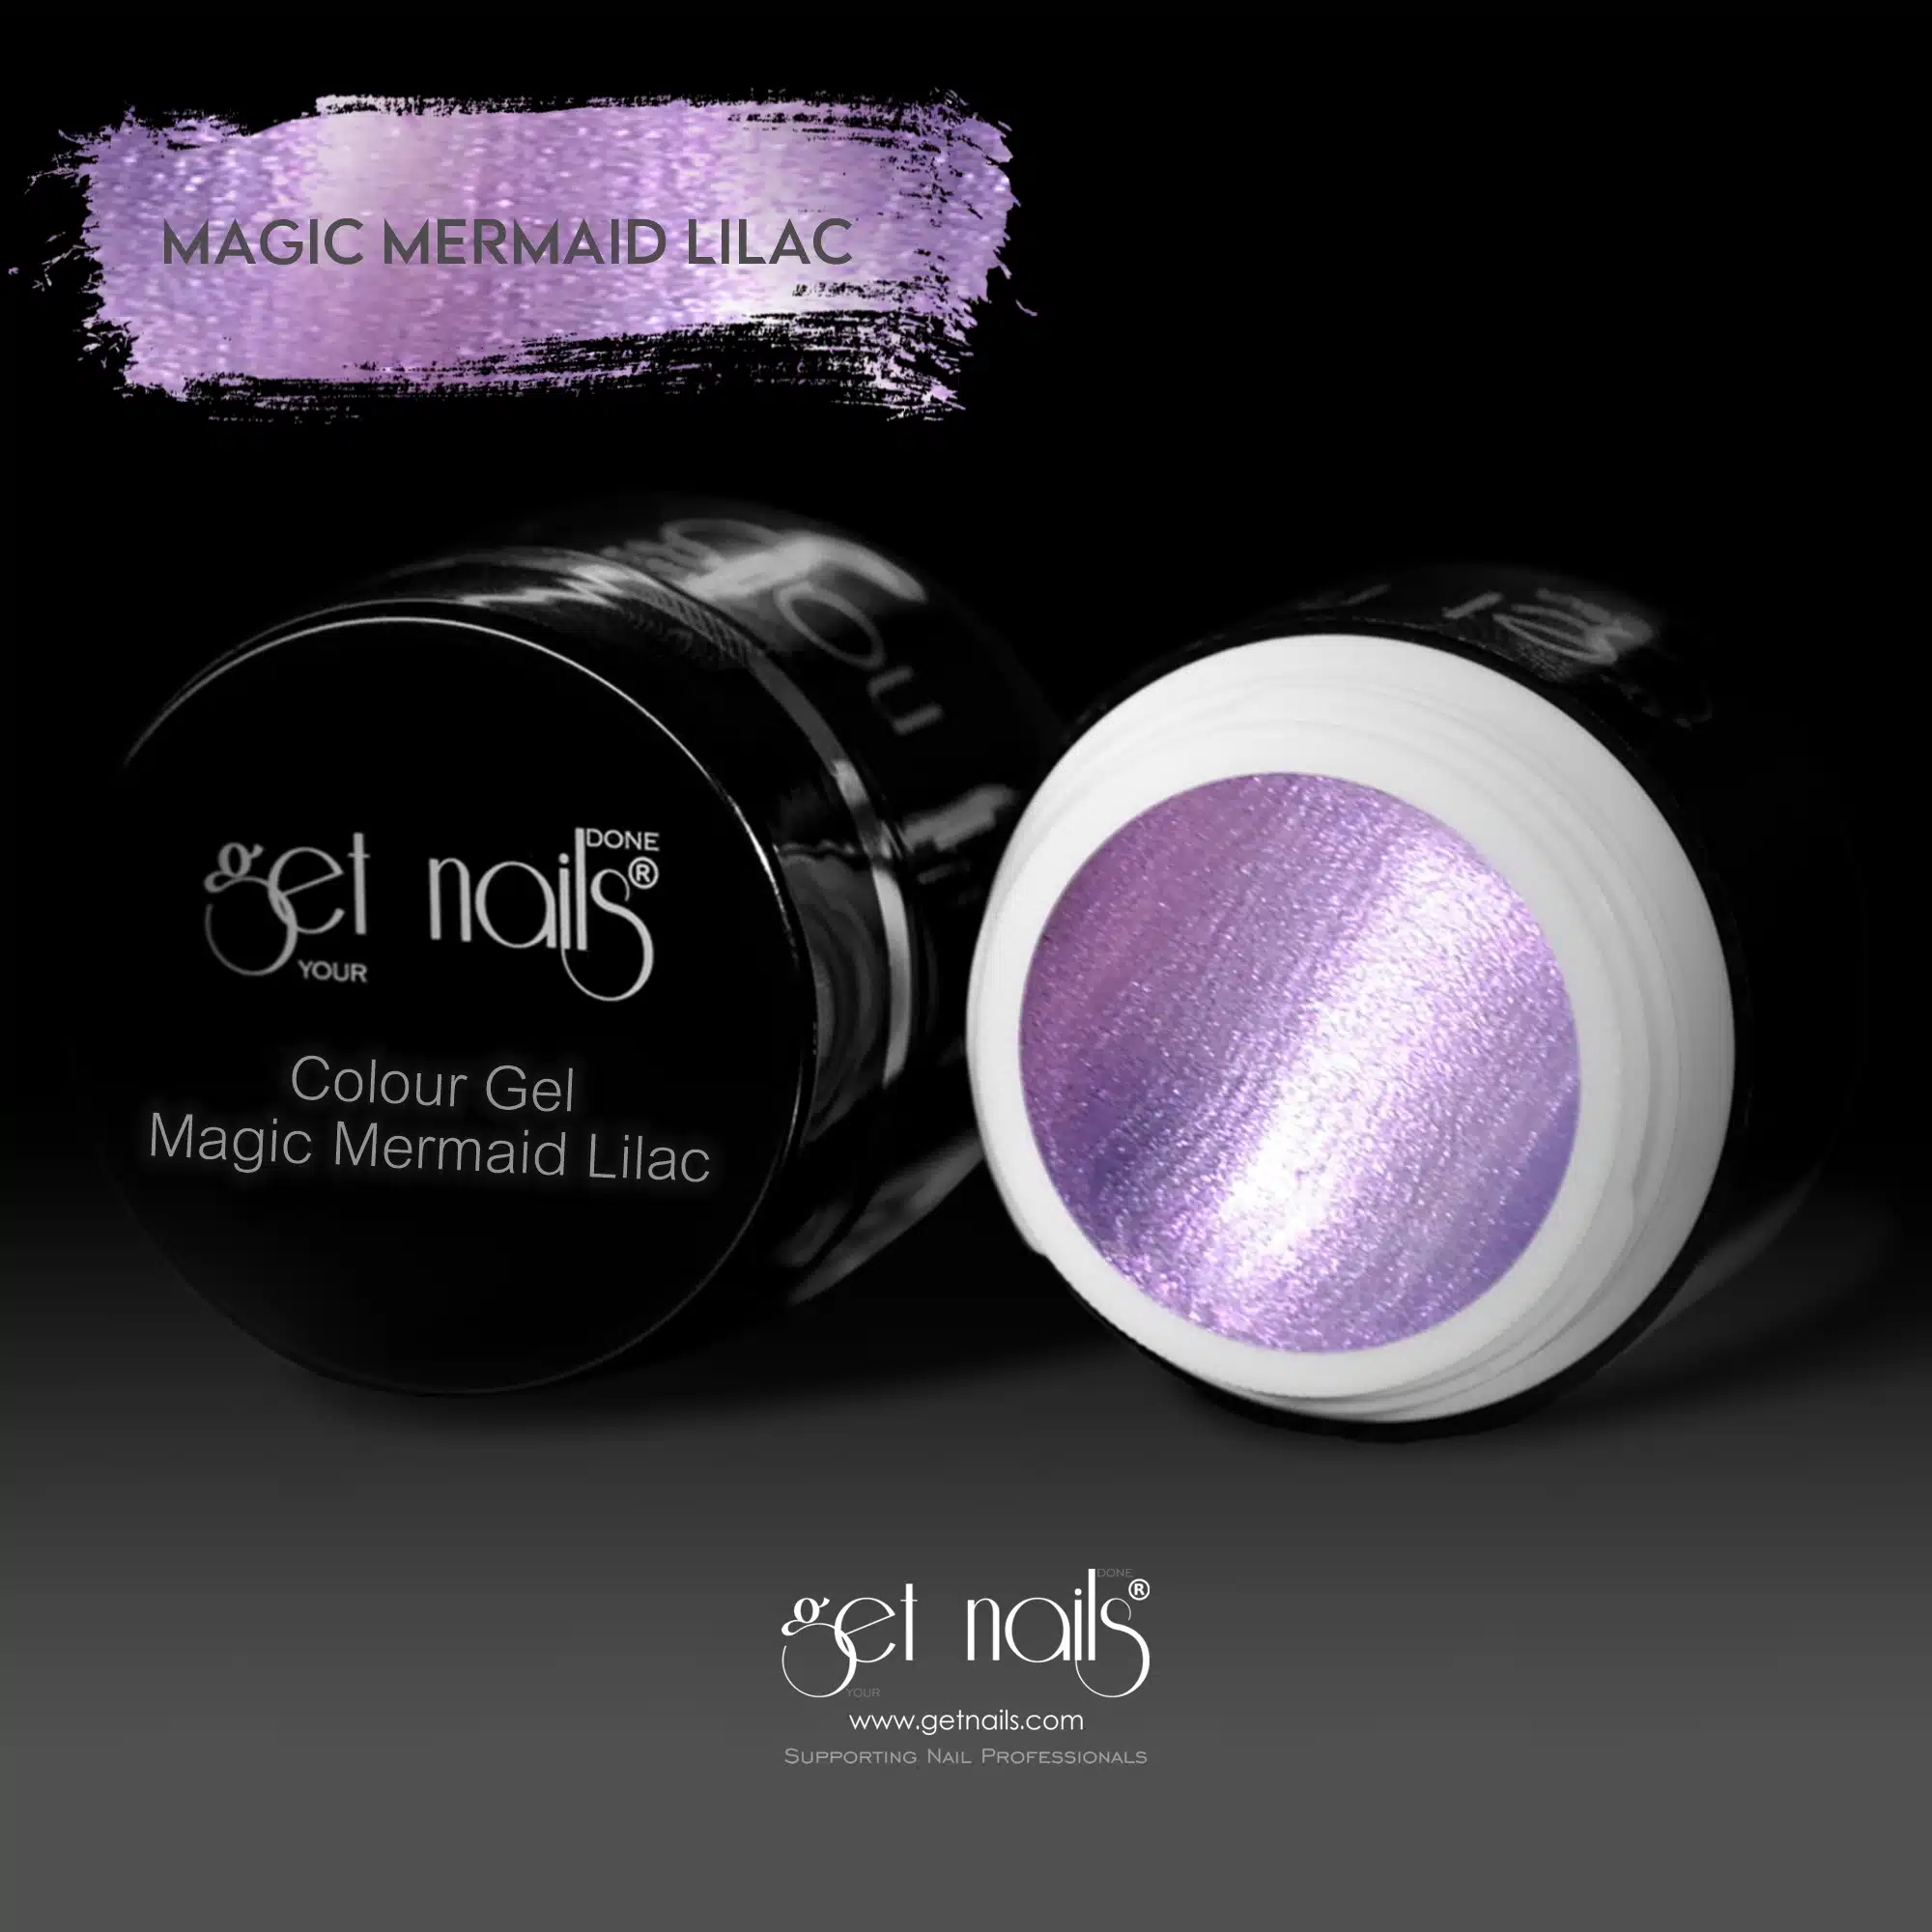 Get Nails Austria - Colour Gel Magic Mermaid Lilac 5g